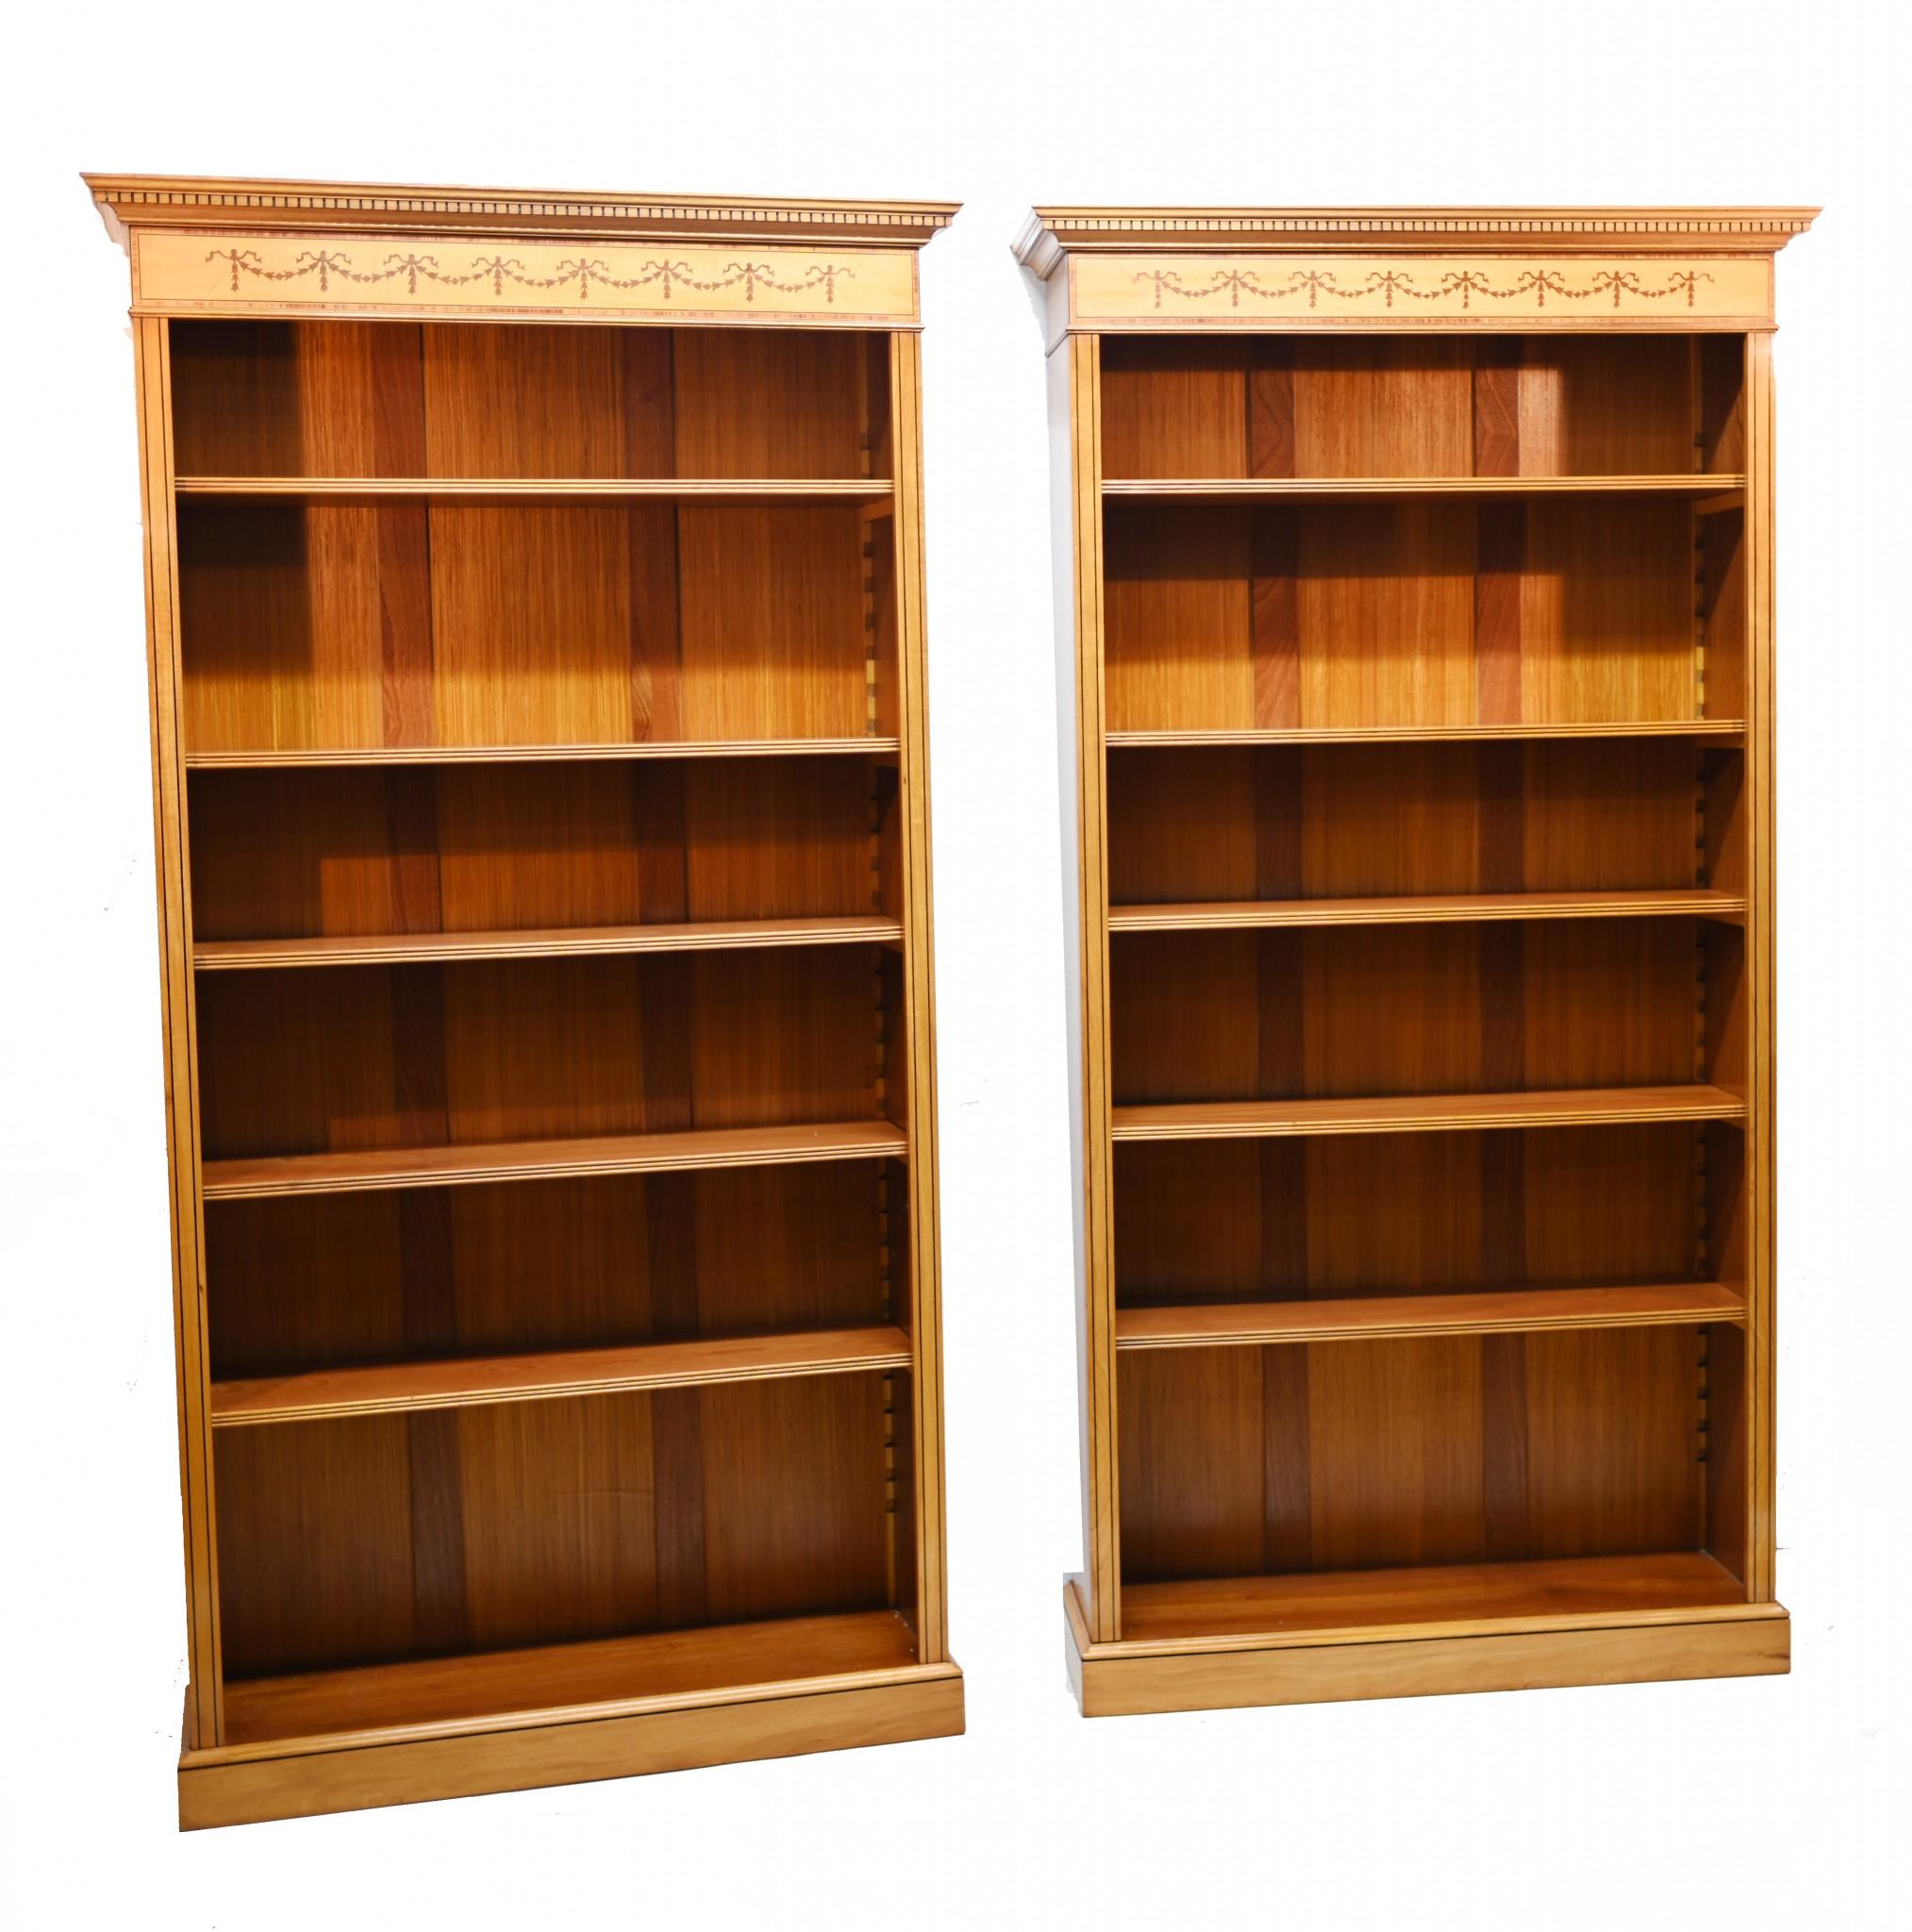 Superbe paire de bibliothèques de style Régence anglaise en bois satiné.
Nous avons normalement des bibliothèques similaires en acajou, c'est donc avec joie que nous avons trouvé celles-ci en bois satiné - parfaites pour les intérieurs modernes.
Les